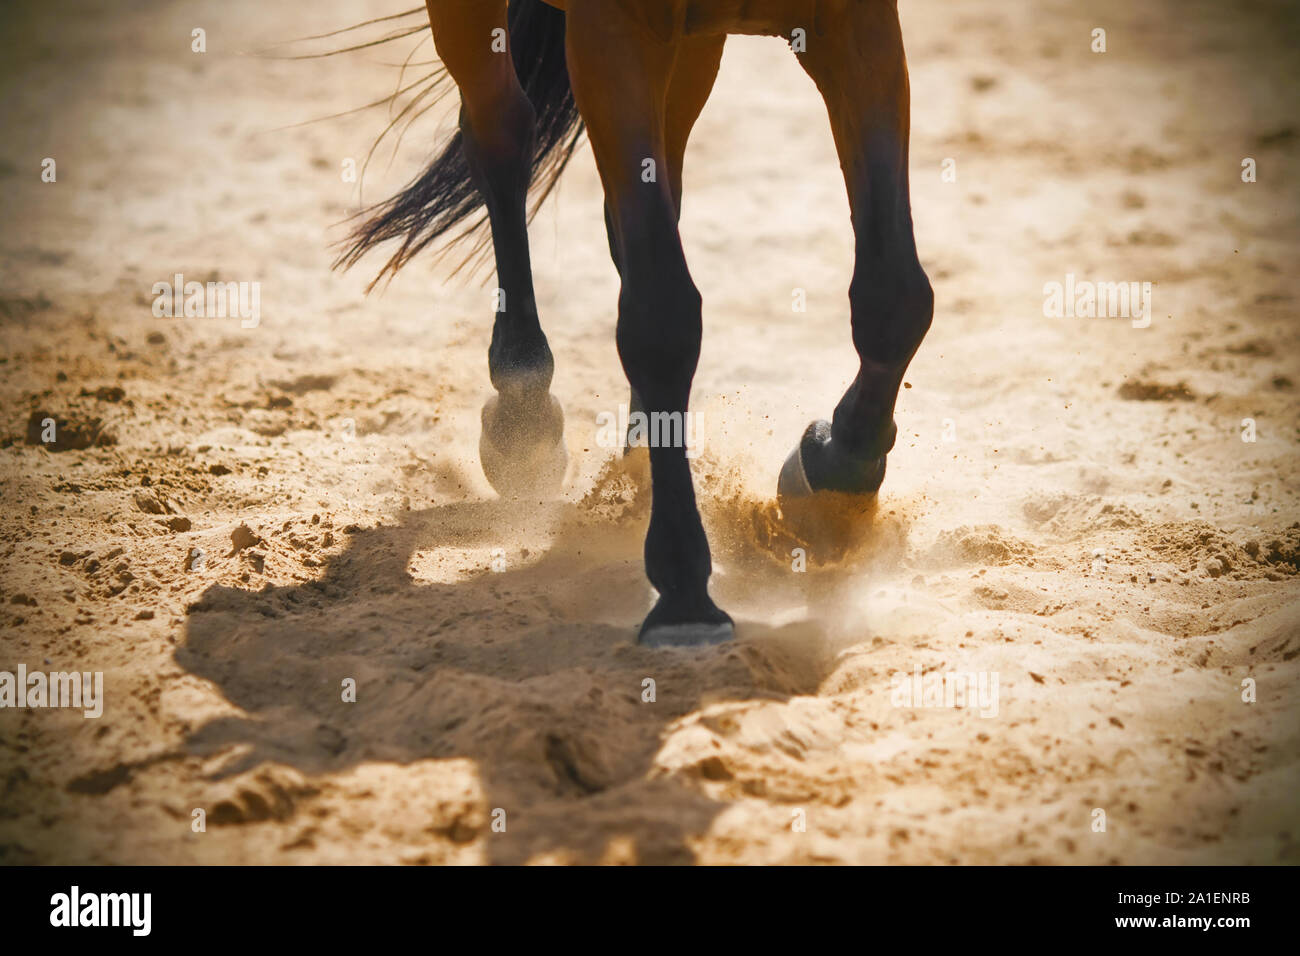 Die grazilen Beine einer Bay Horse über den Sand galoppieren, kicking up dust im warmen Sonnenlicht. Stockfoto